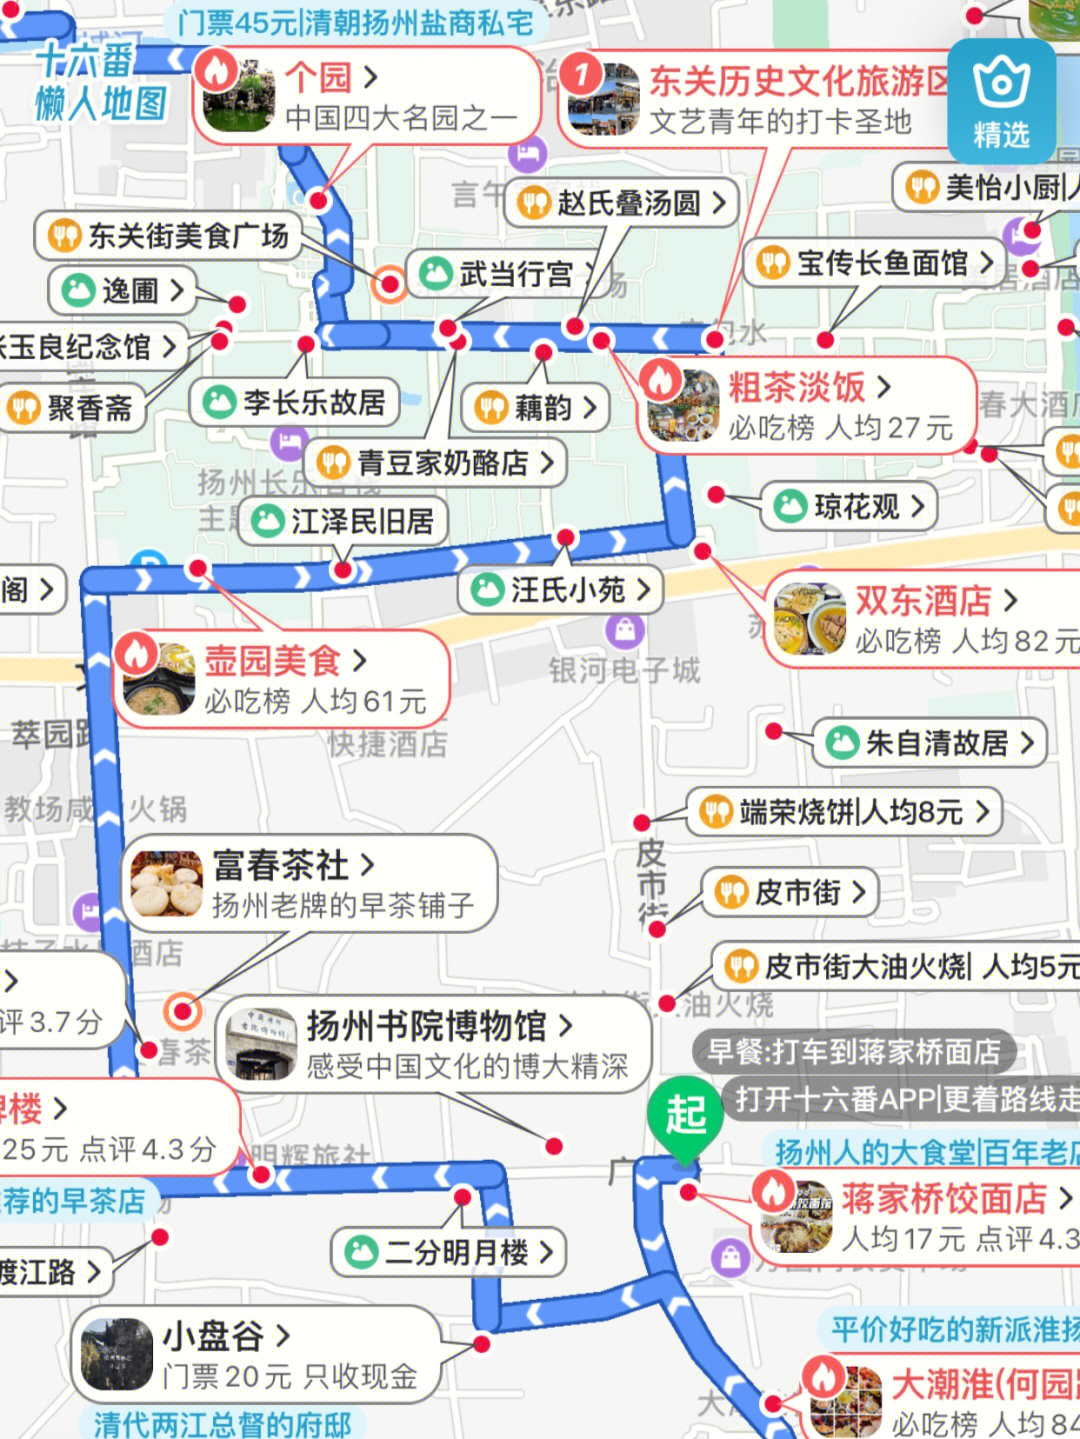 扬州旅游地图手抄报图片